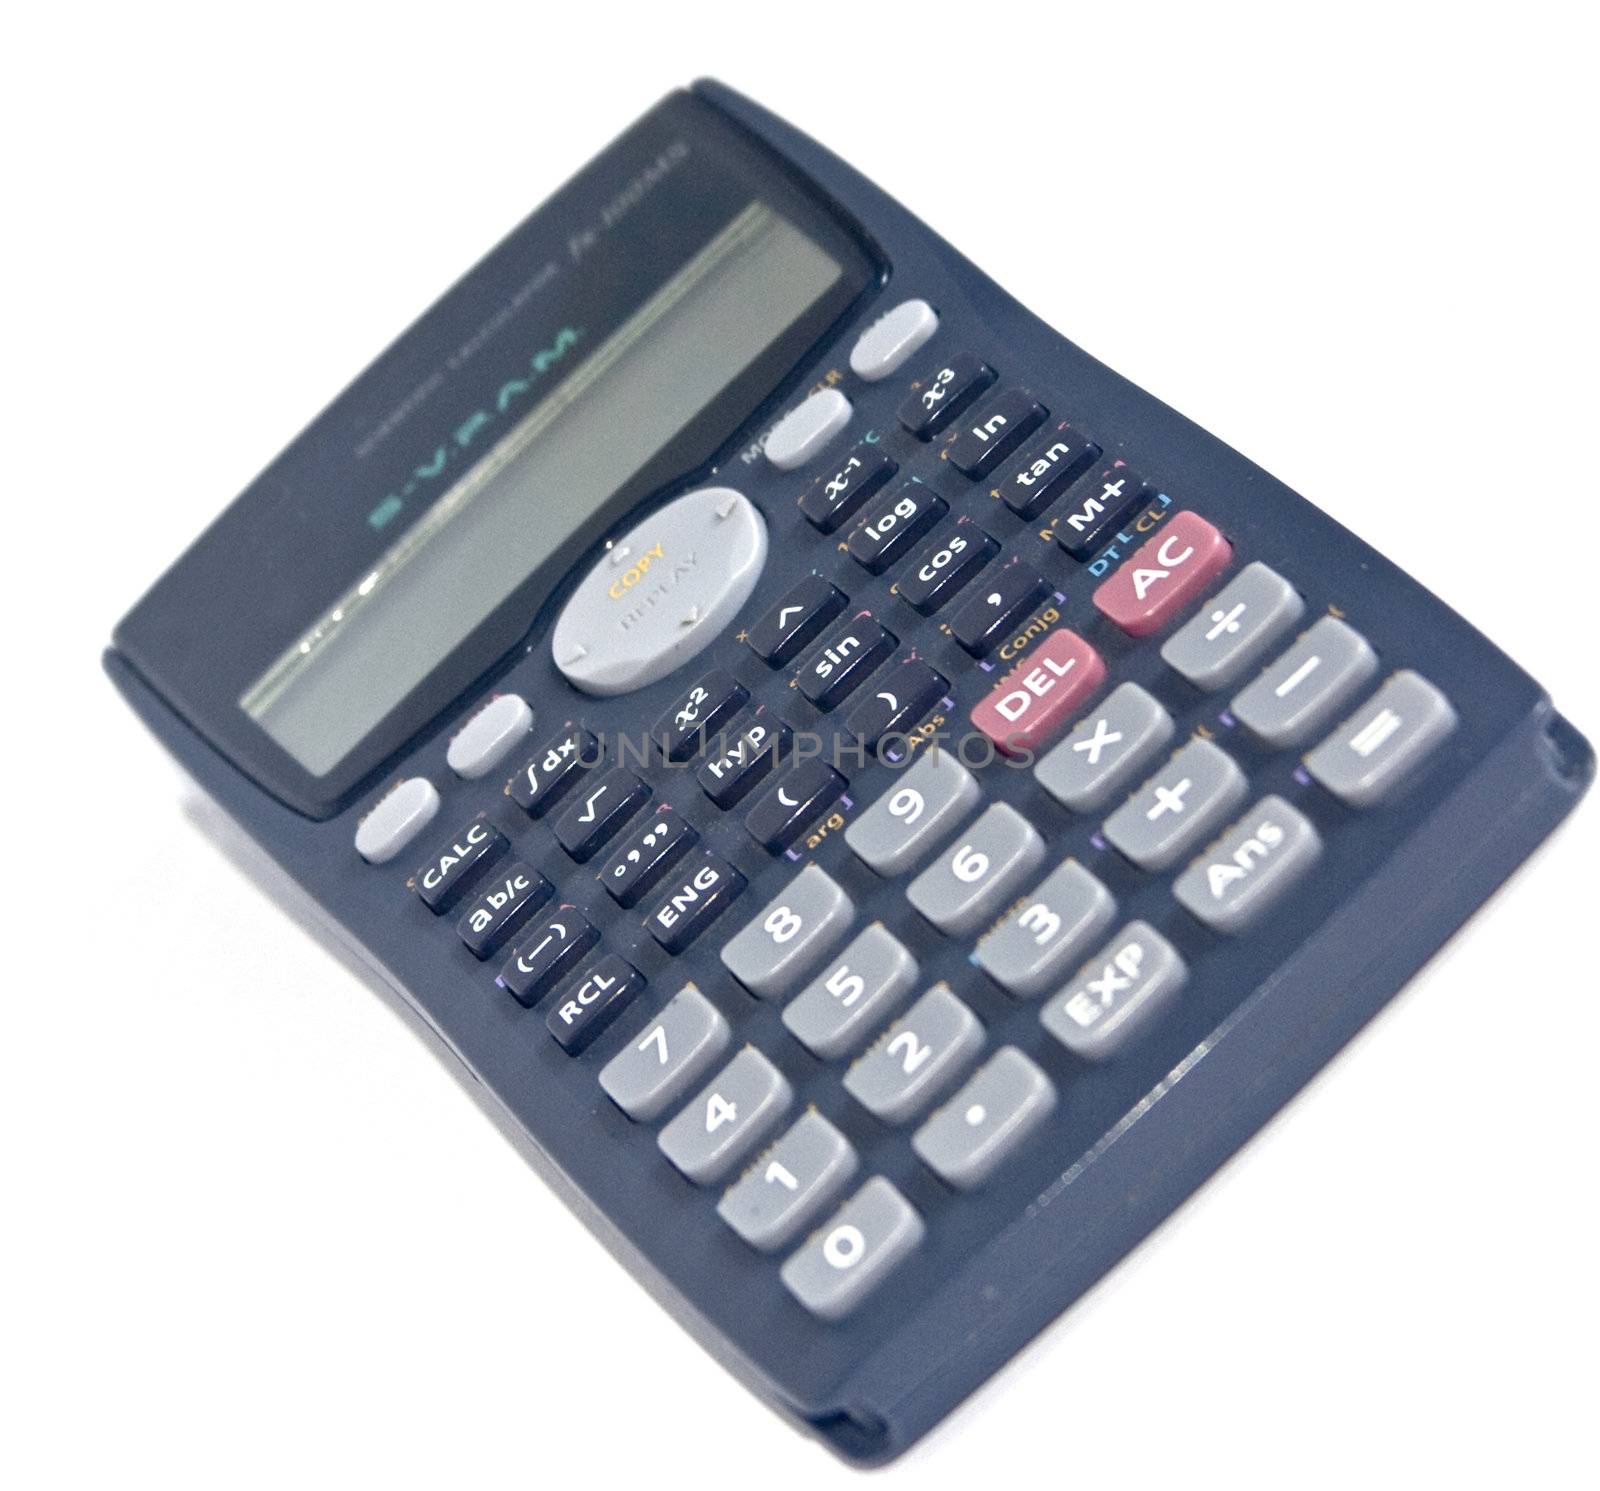 The calculator by soloir